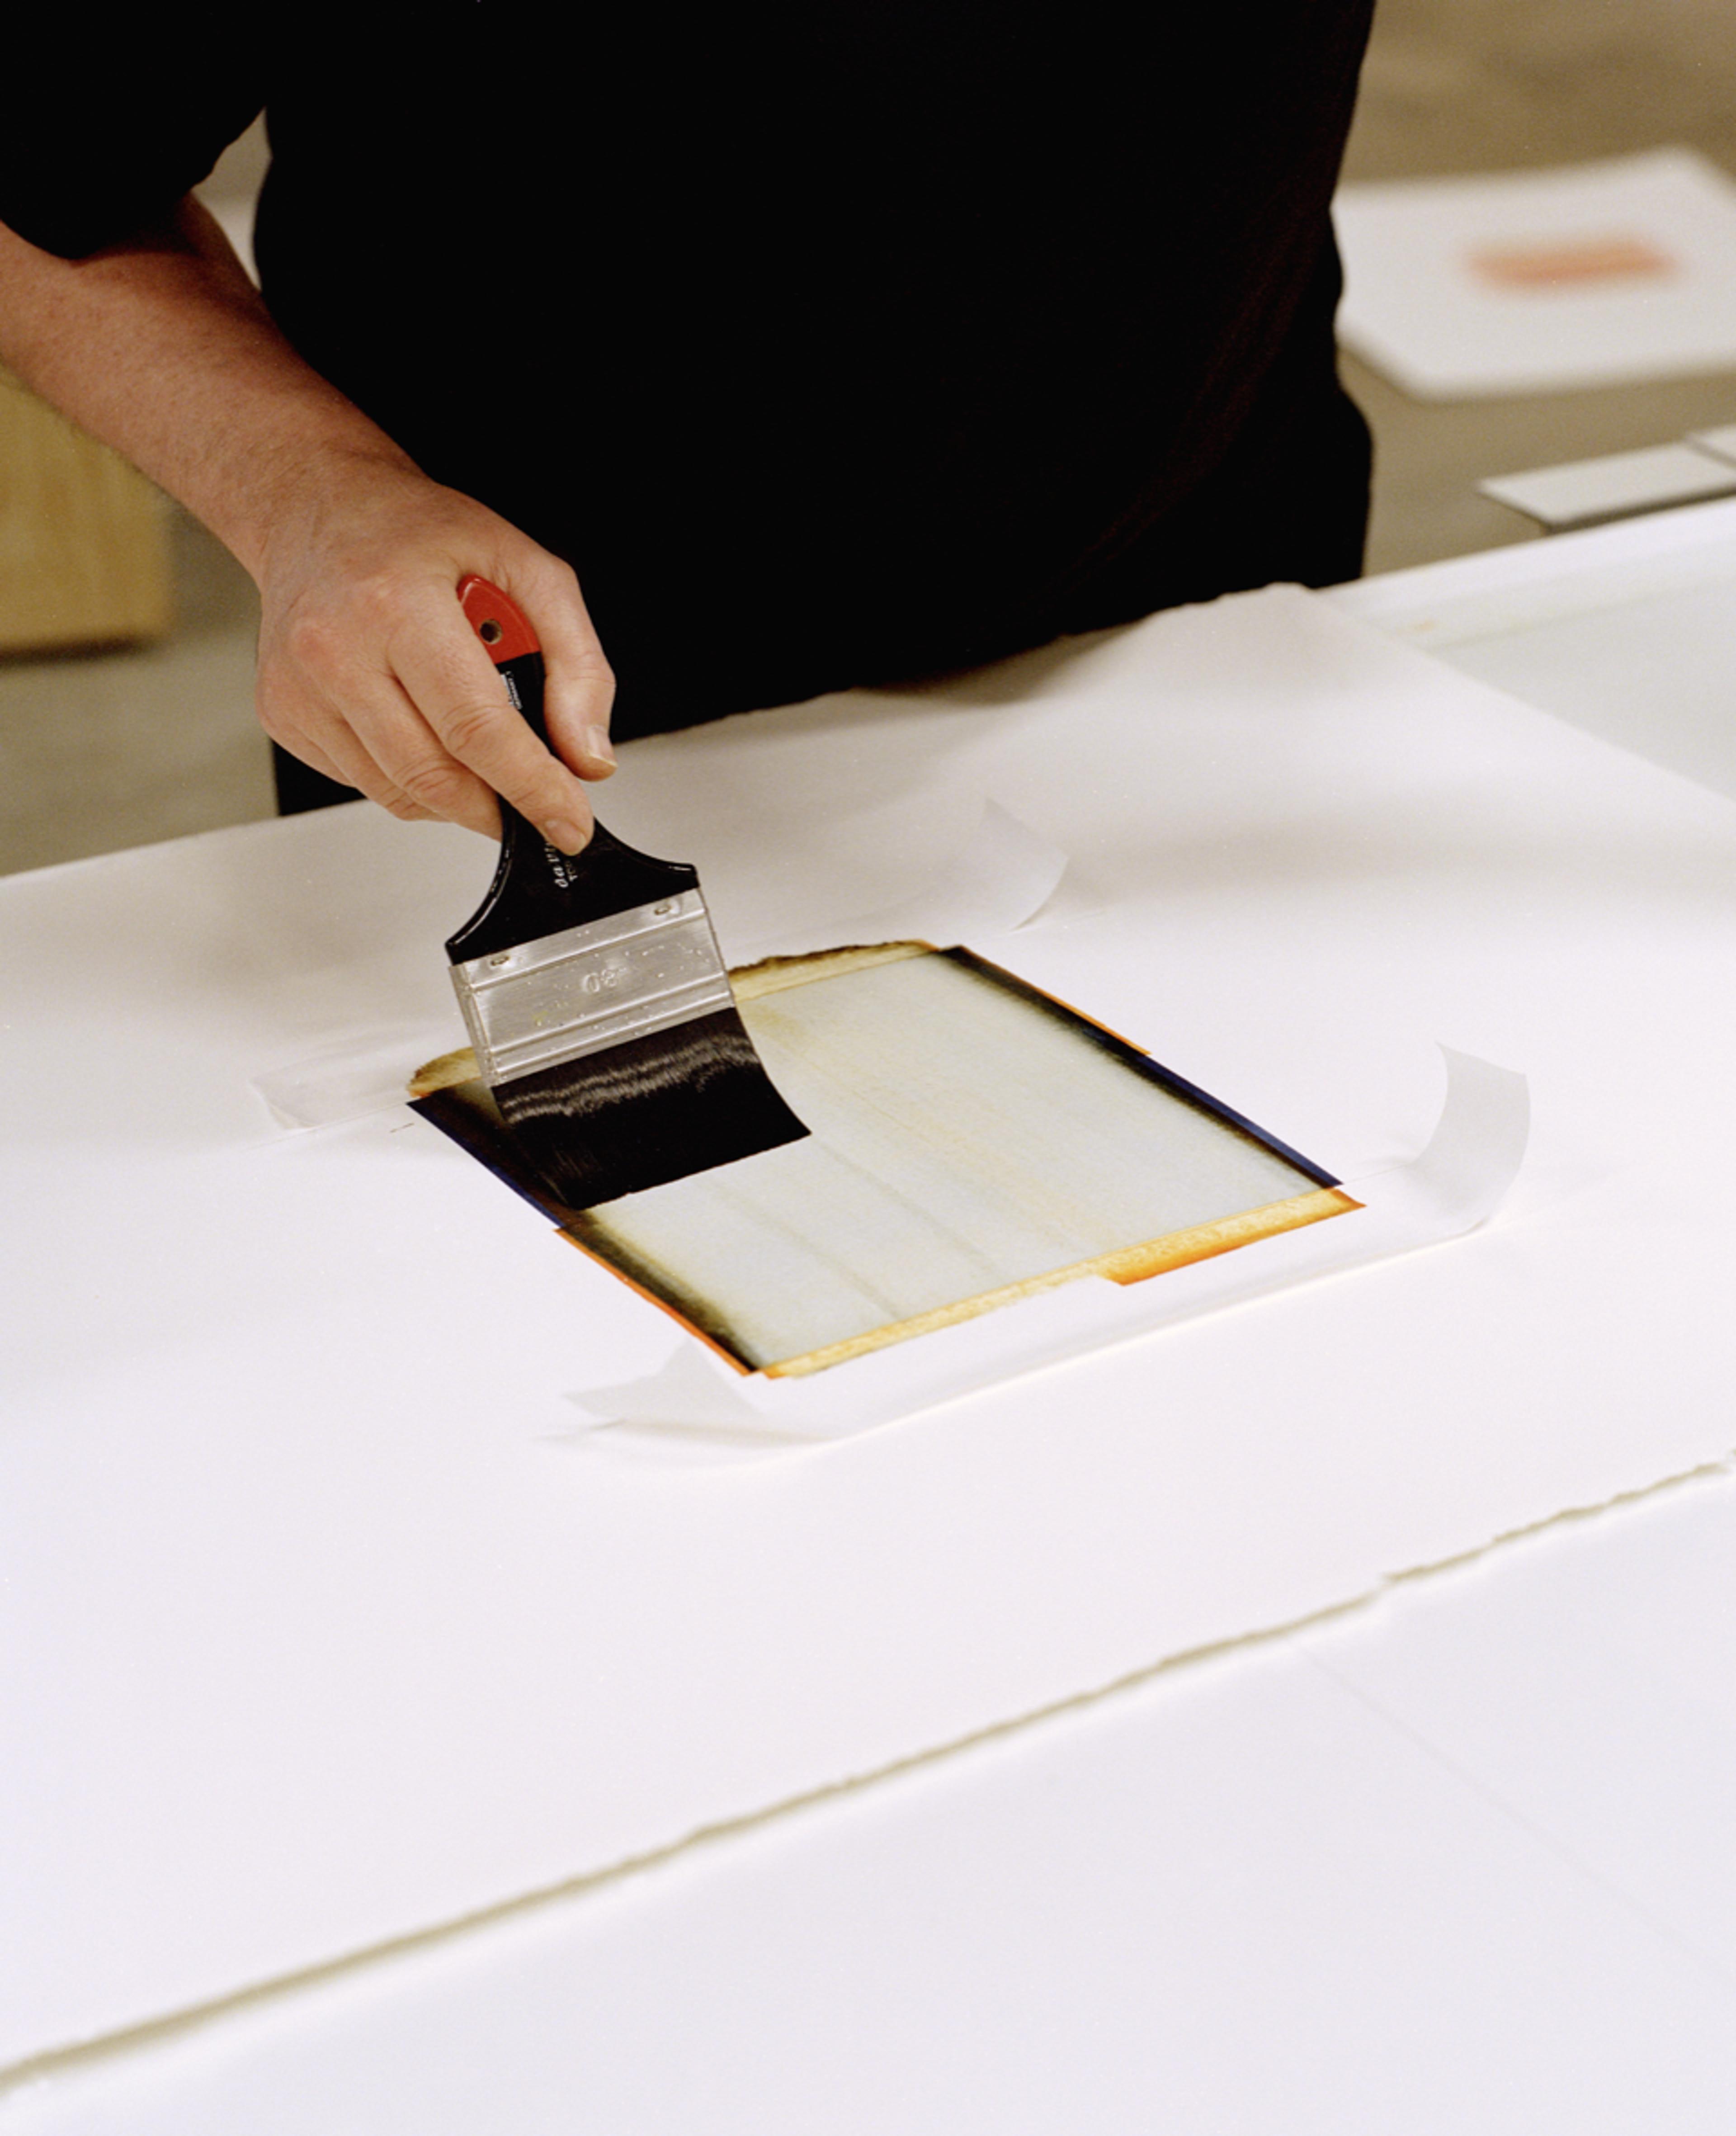 En hånd påfører maling på et ark